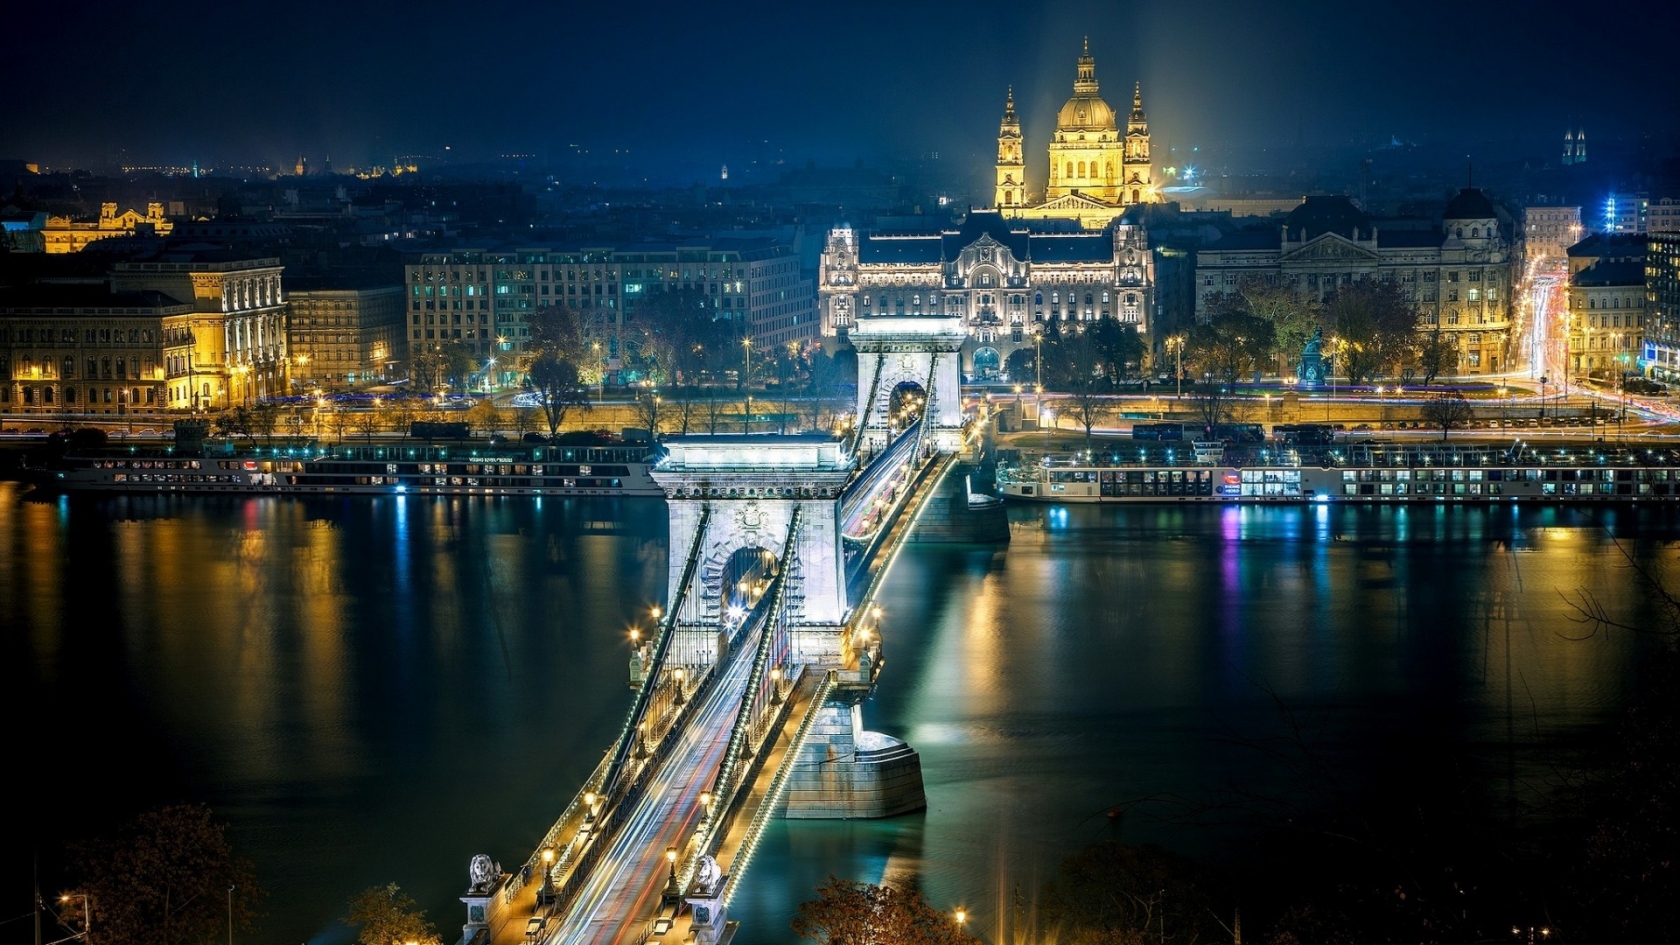 Szechenyi Chain Bridge Budapest for 1680 x 945 HDTV resolution